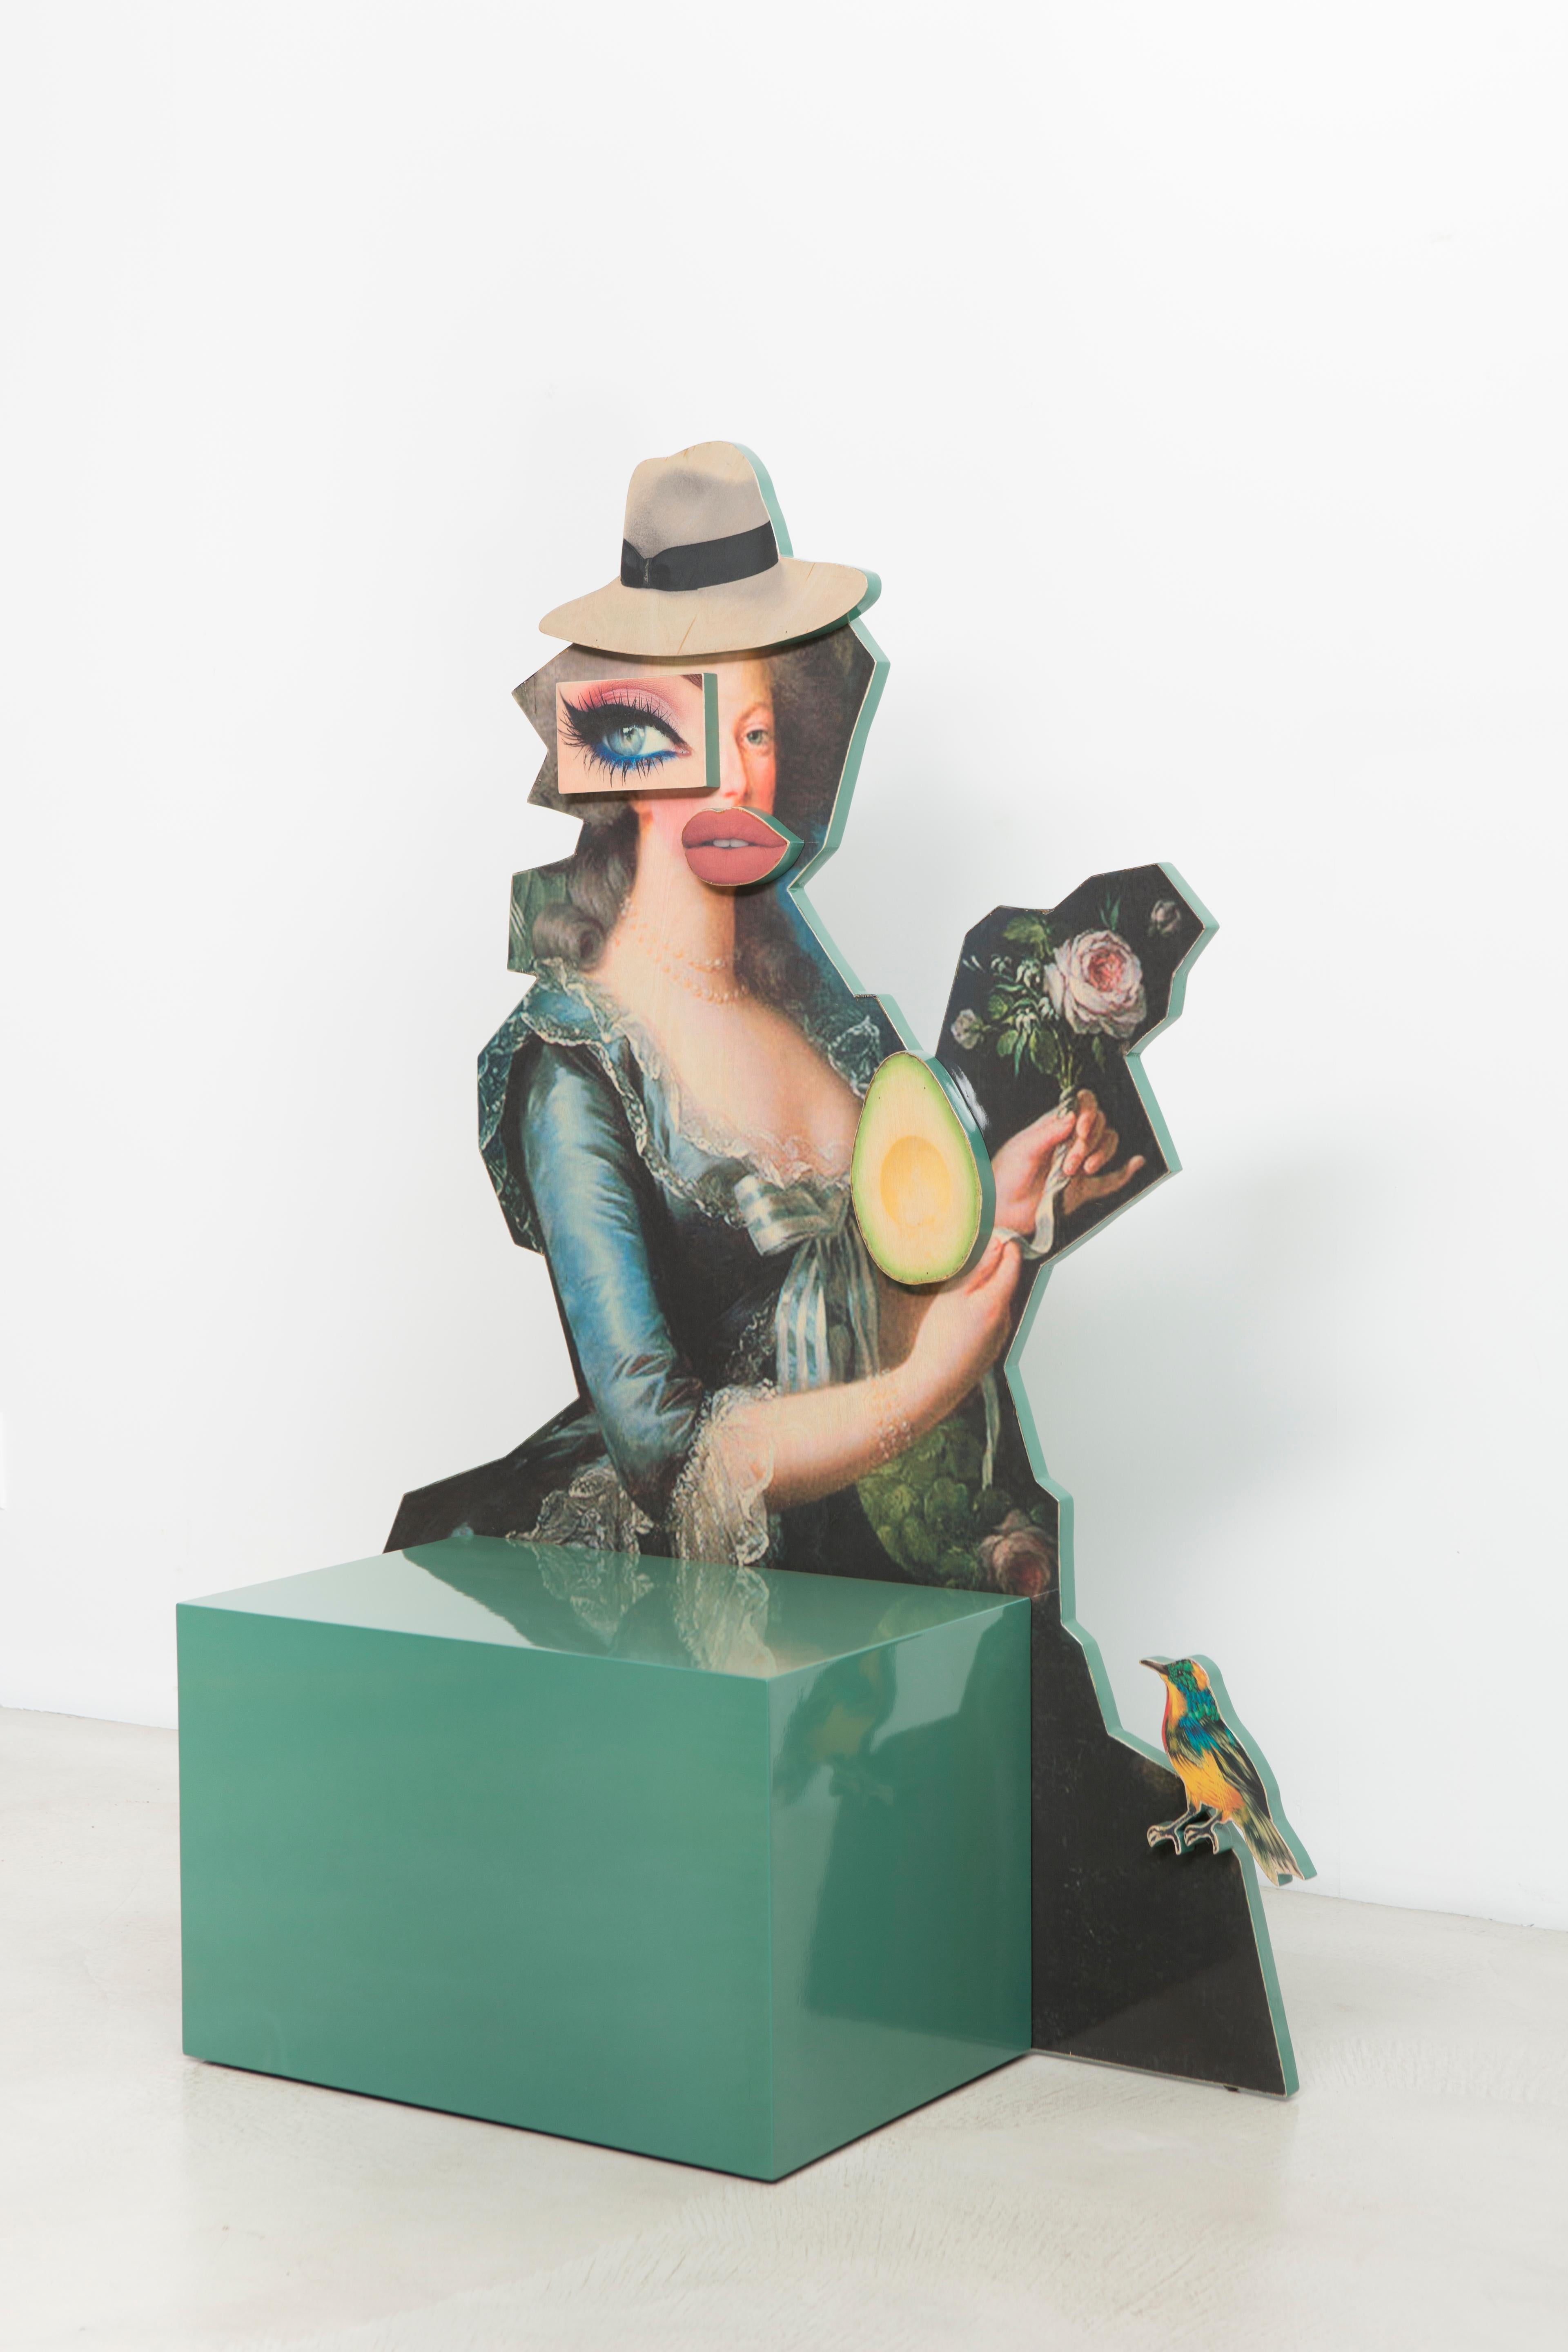 Dieser skulpturale Beistelltisch oder Sitz aus der Serie Metropolitan Sets von Mattia Biagi ist Ausdruck der persönlichen Auseinandersetzung des Künstlers mit dem Spannungsfeld zwischen Leben und Tod, Natur und Zivilisation, Bewahrung und